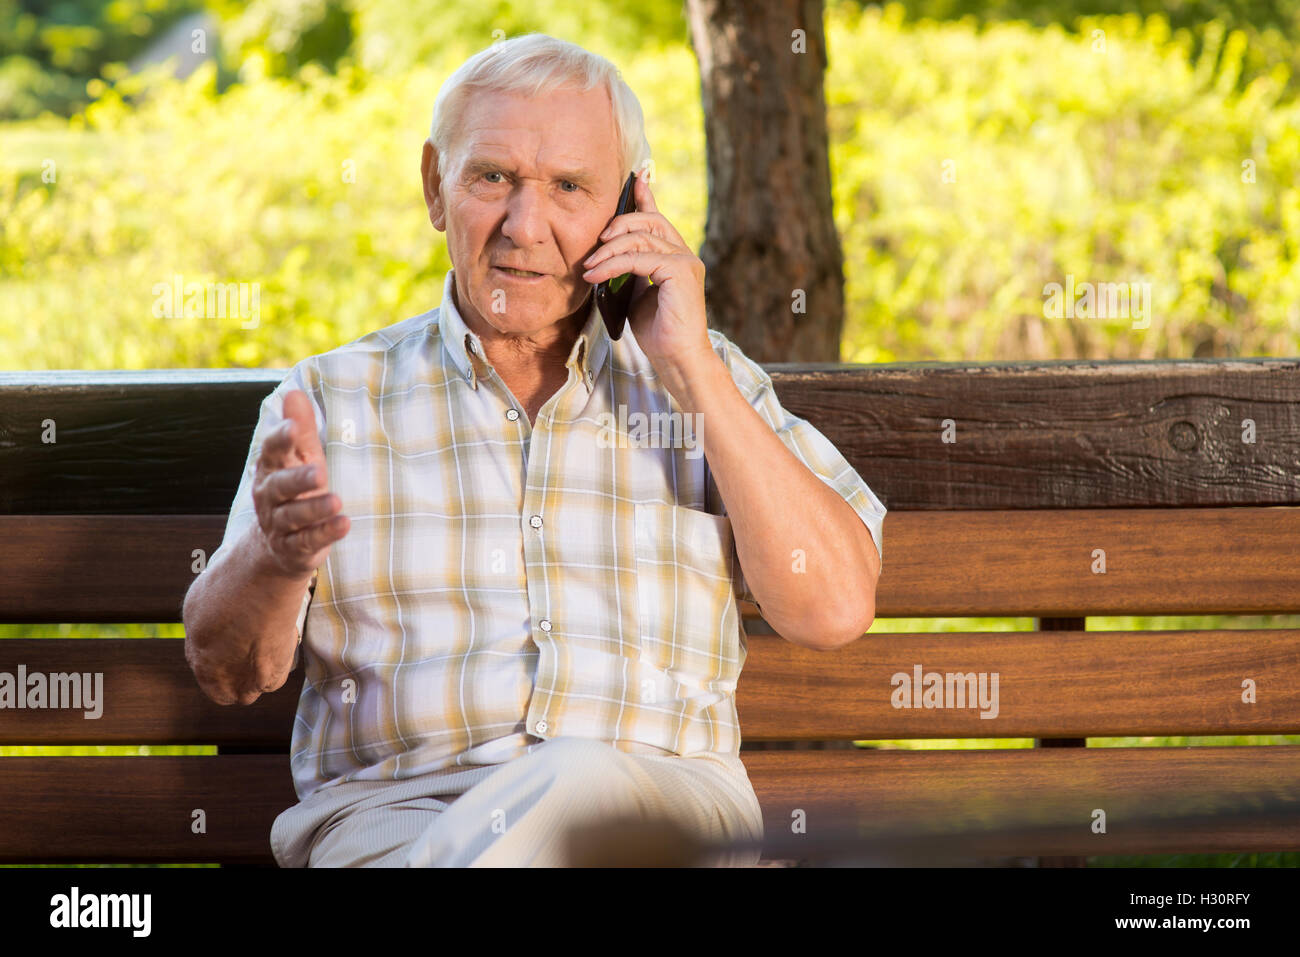 Про пожилого мужчину. Пожилой мужчина с телефоном. Дед звонит. Грустный пожилой человек с телефоном. Пожилой мужчина в магазине.